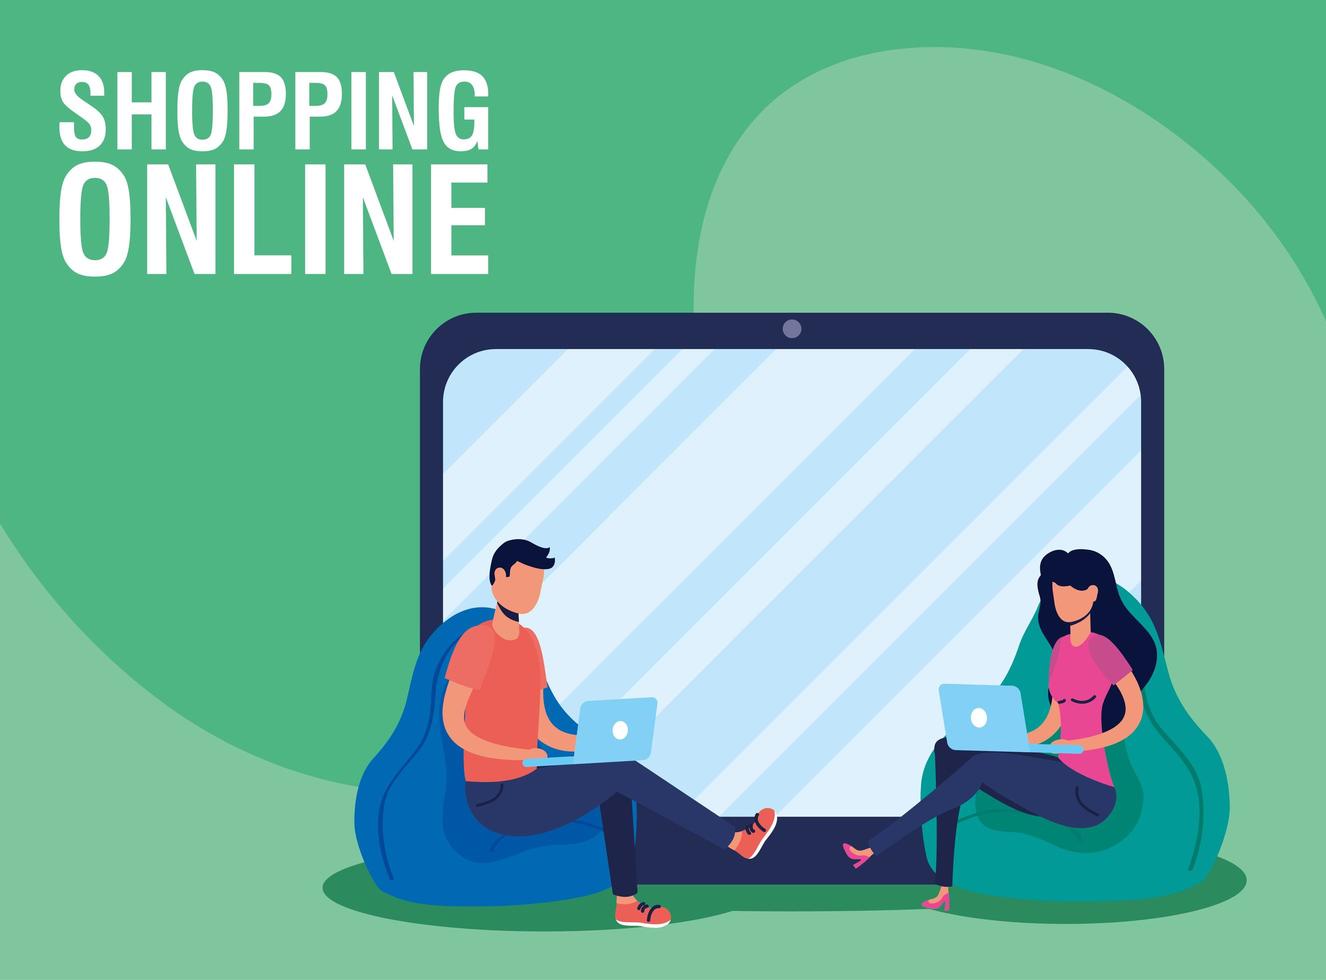 banner de compras online y comercio electrónico. vector